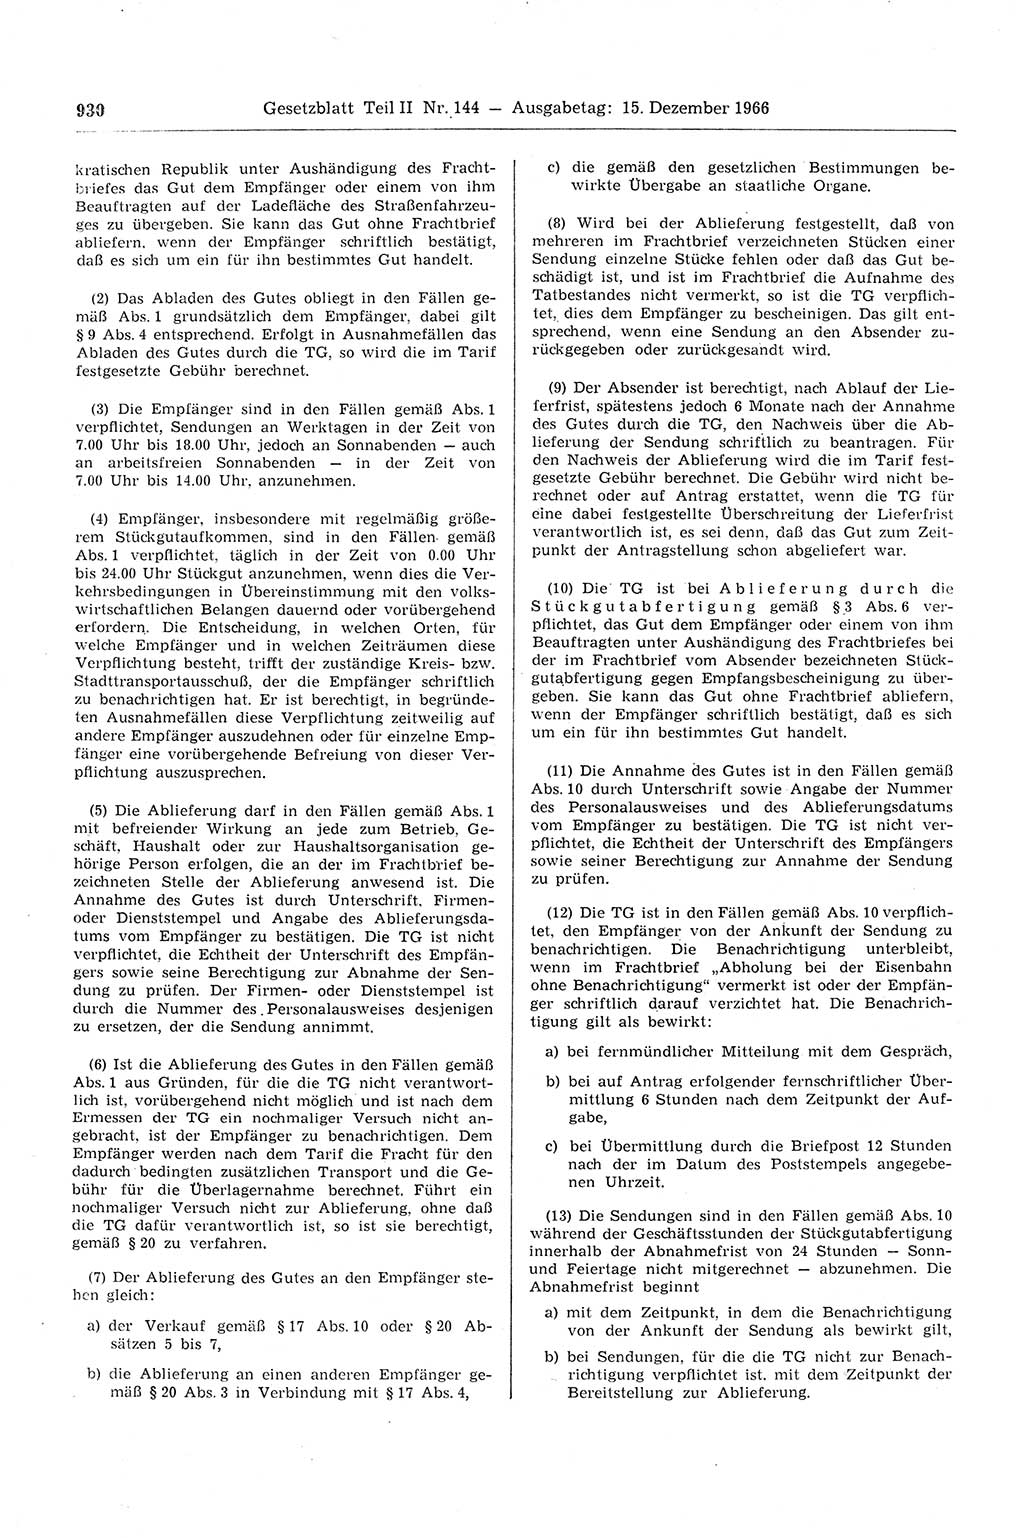 Gesetzblatt (GBl.) der Deutschen Demokratischen Republik (DDR) Teil ⅠⅠ 1966, Seite 930 (GBl. DDR ⅠⅠ 1966, S. 930)